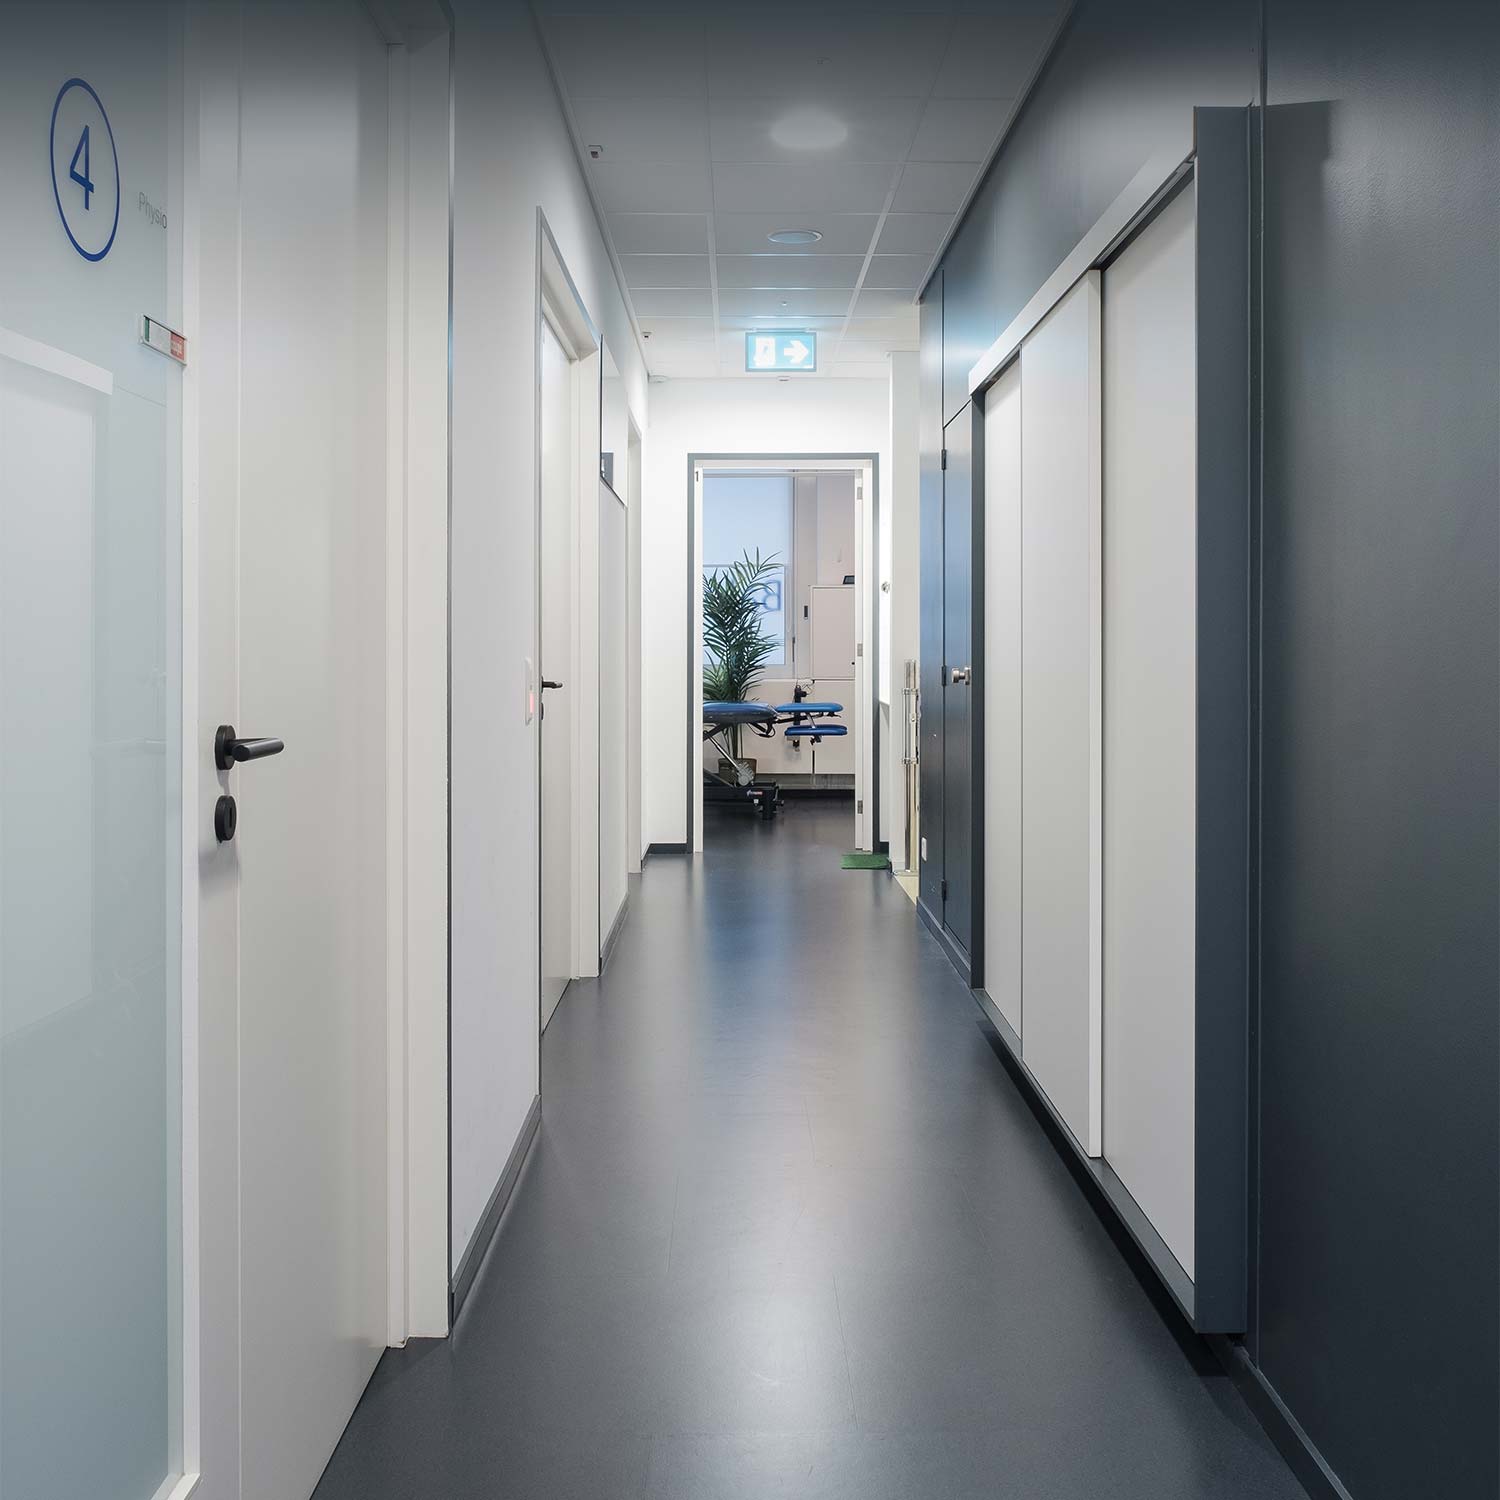 Couloirs menant aux salles de consultation du Centre Physio Santé, cabinet de physiothérapie à Genève